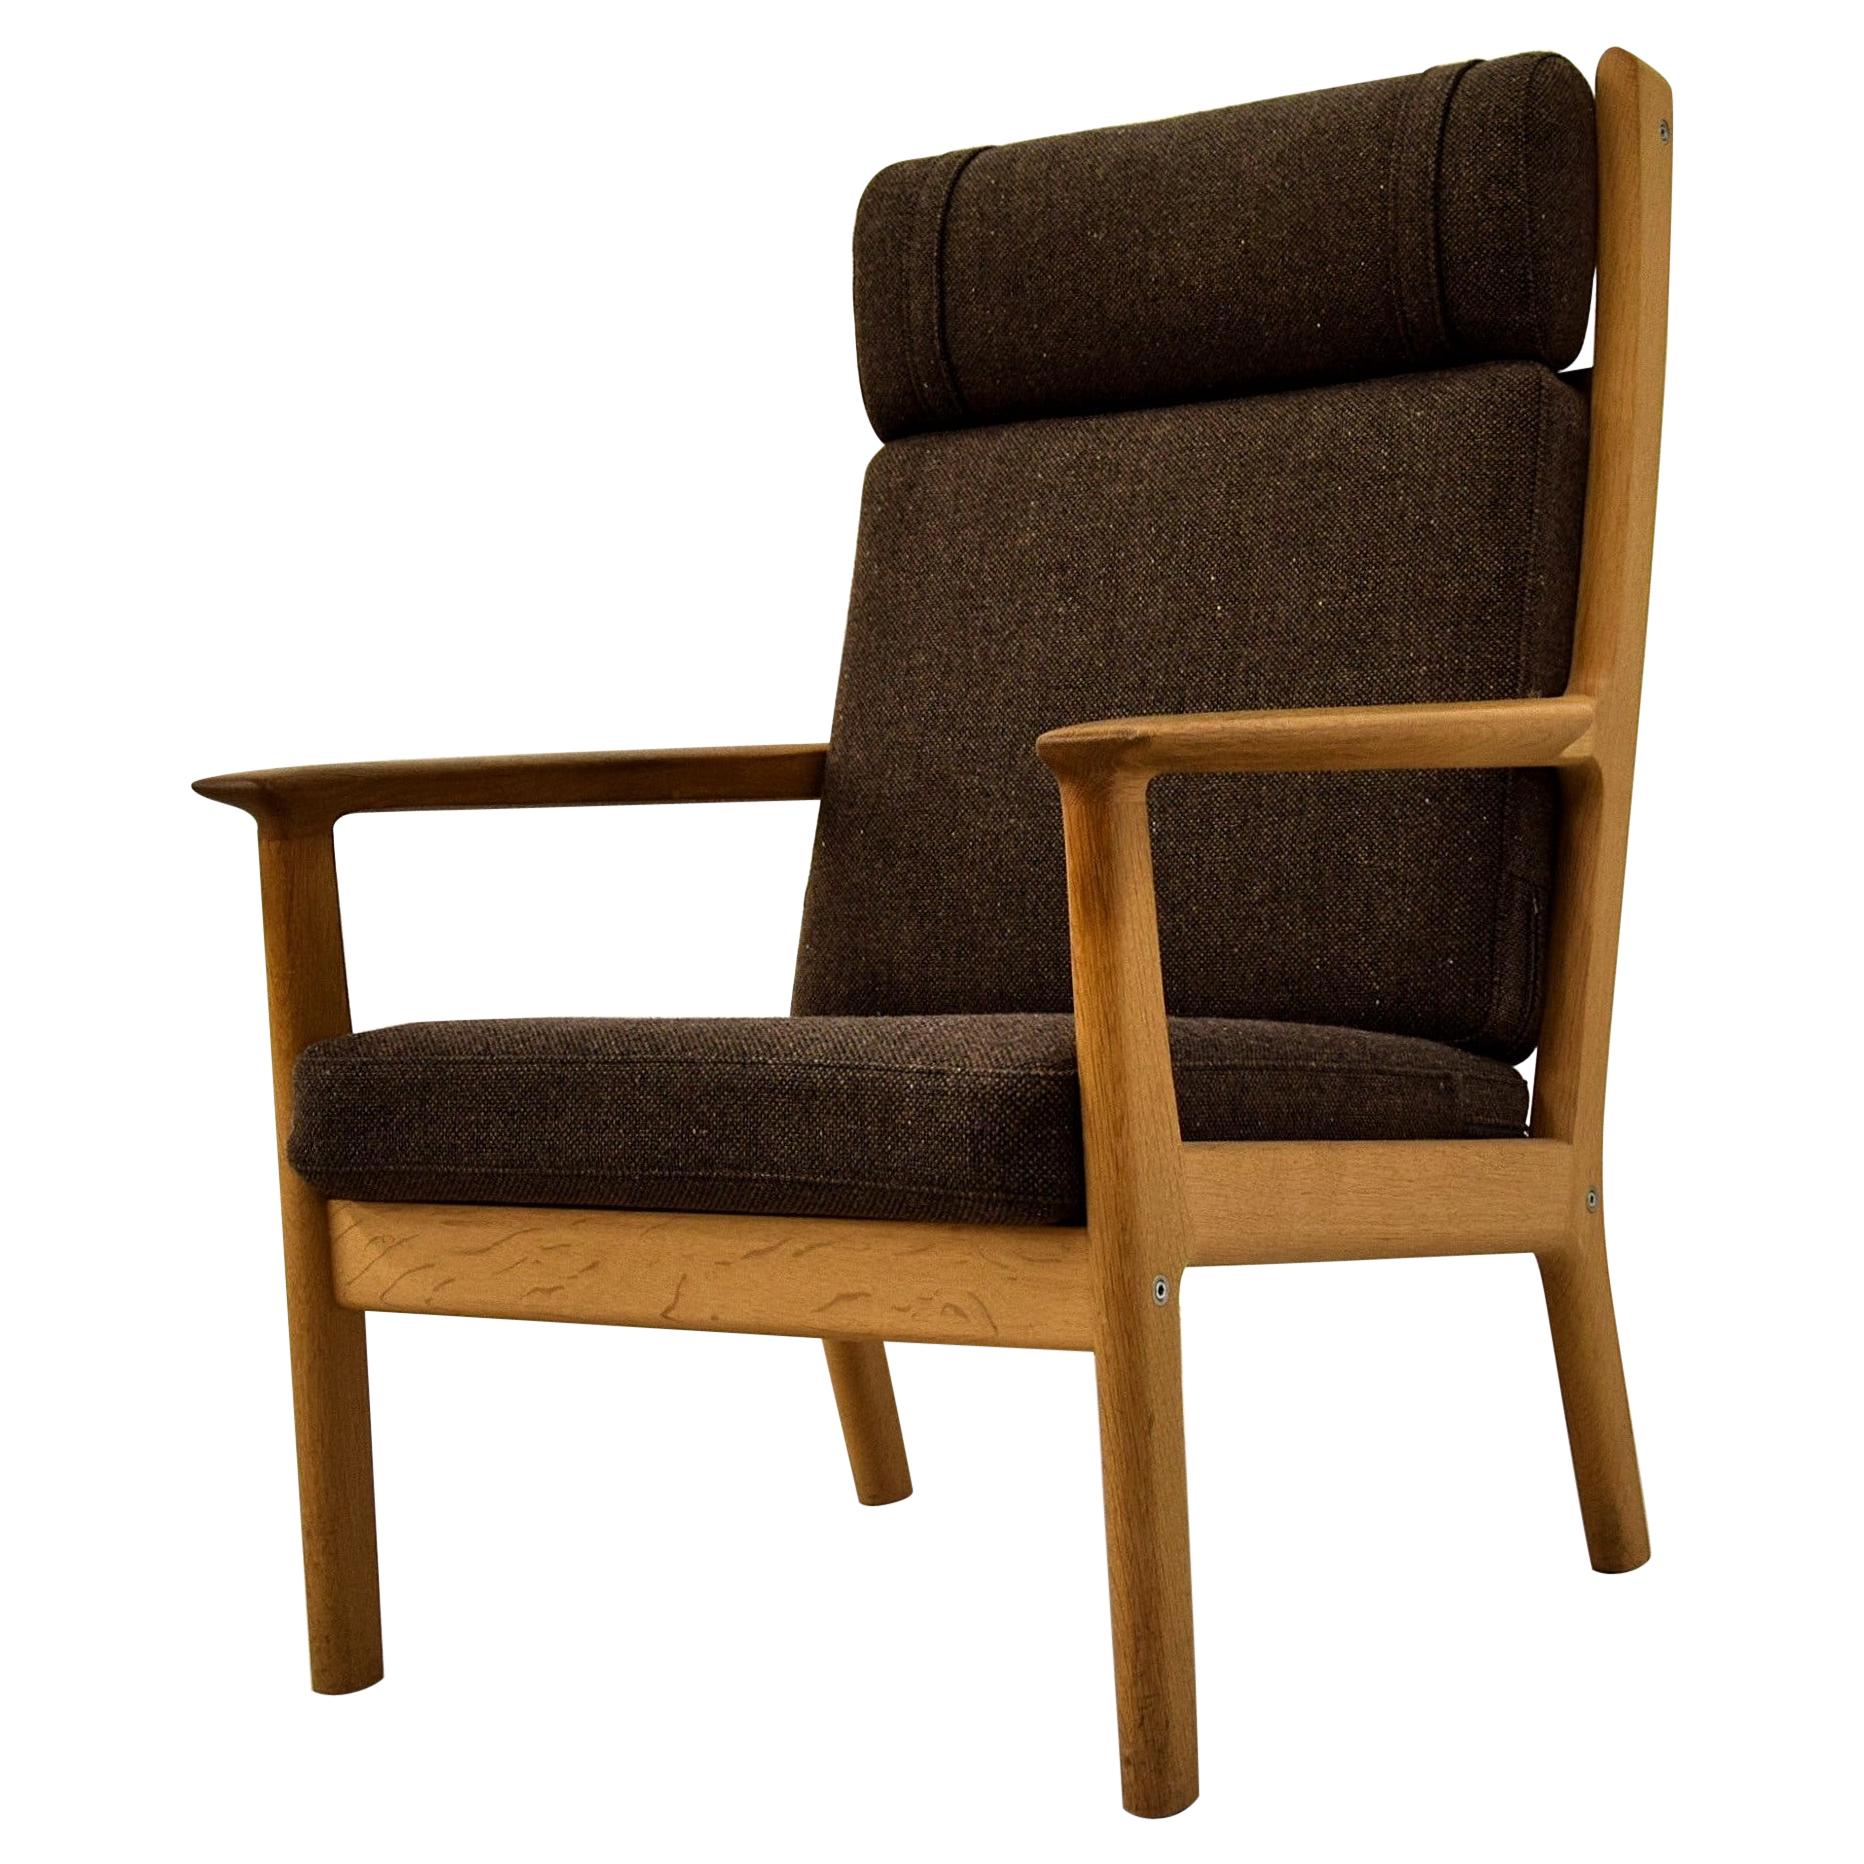 Hans Wegner fauteuil de salon danois en chêne brun de style moderne du milieu du siècle dernier